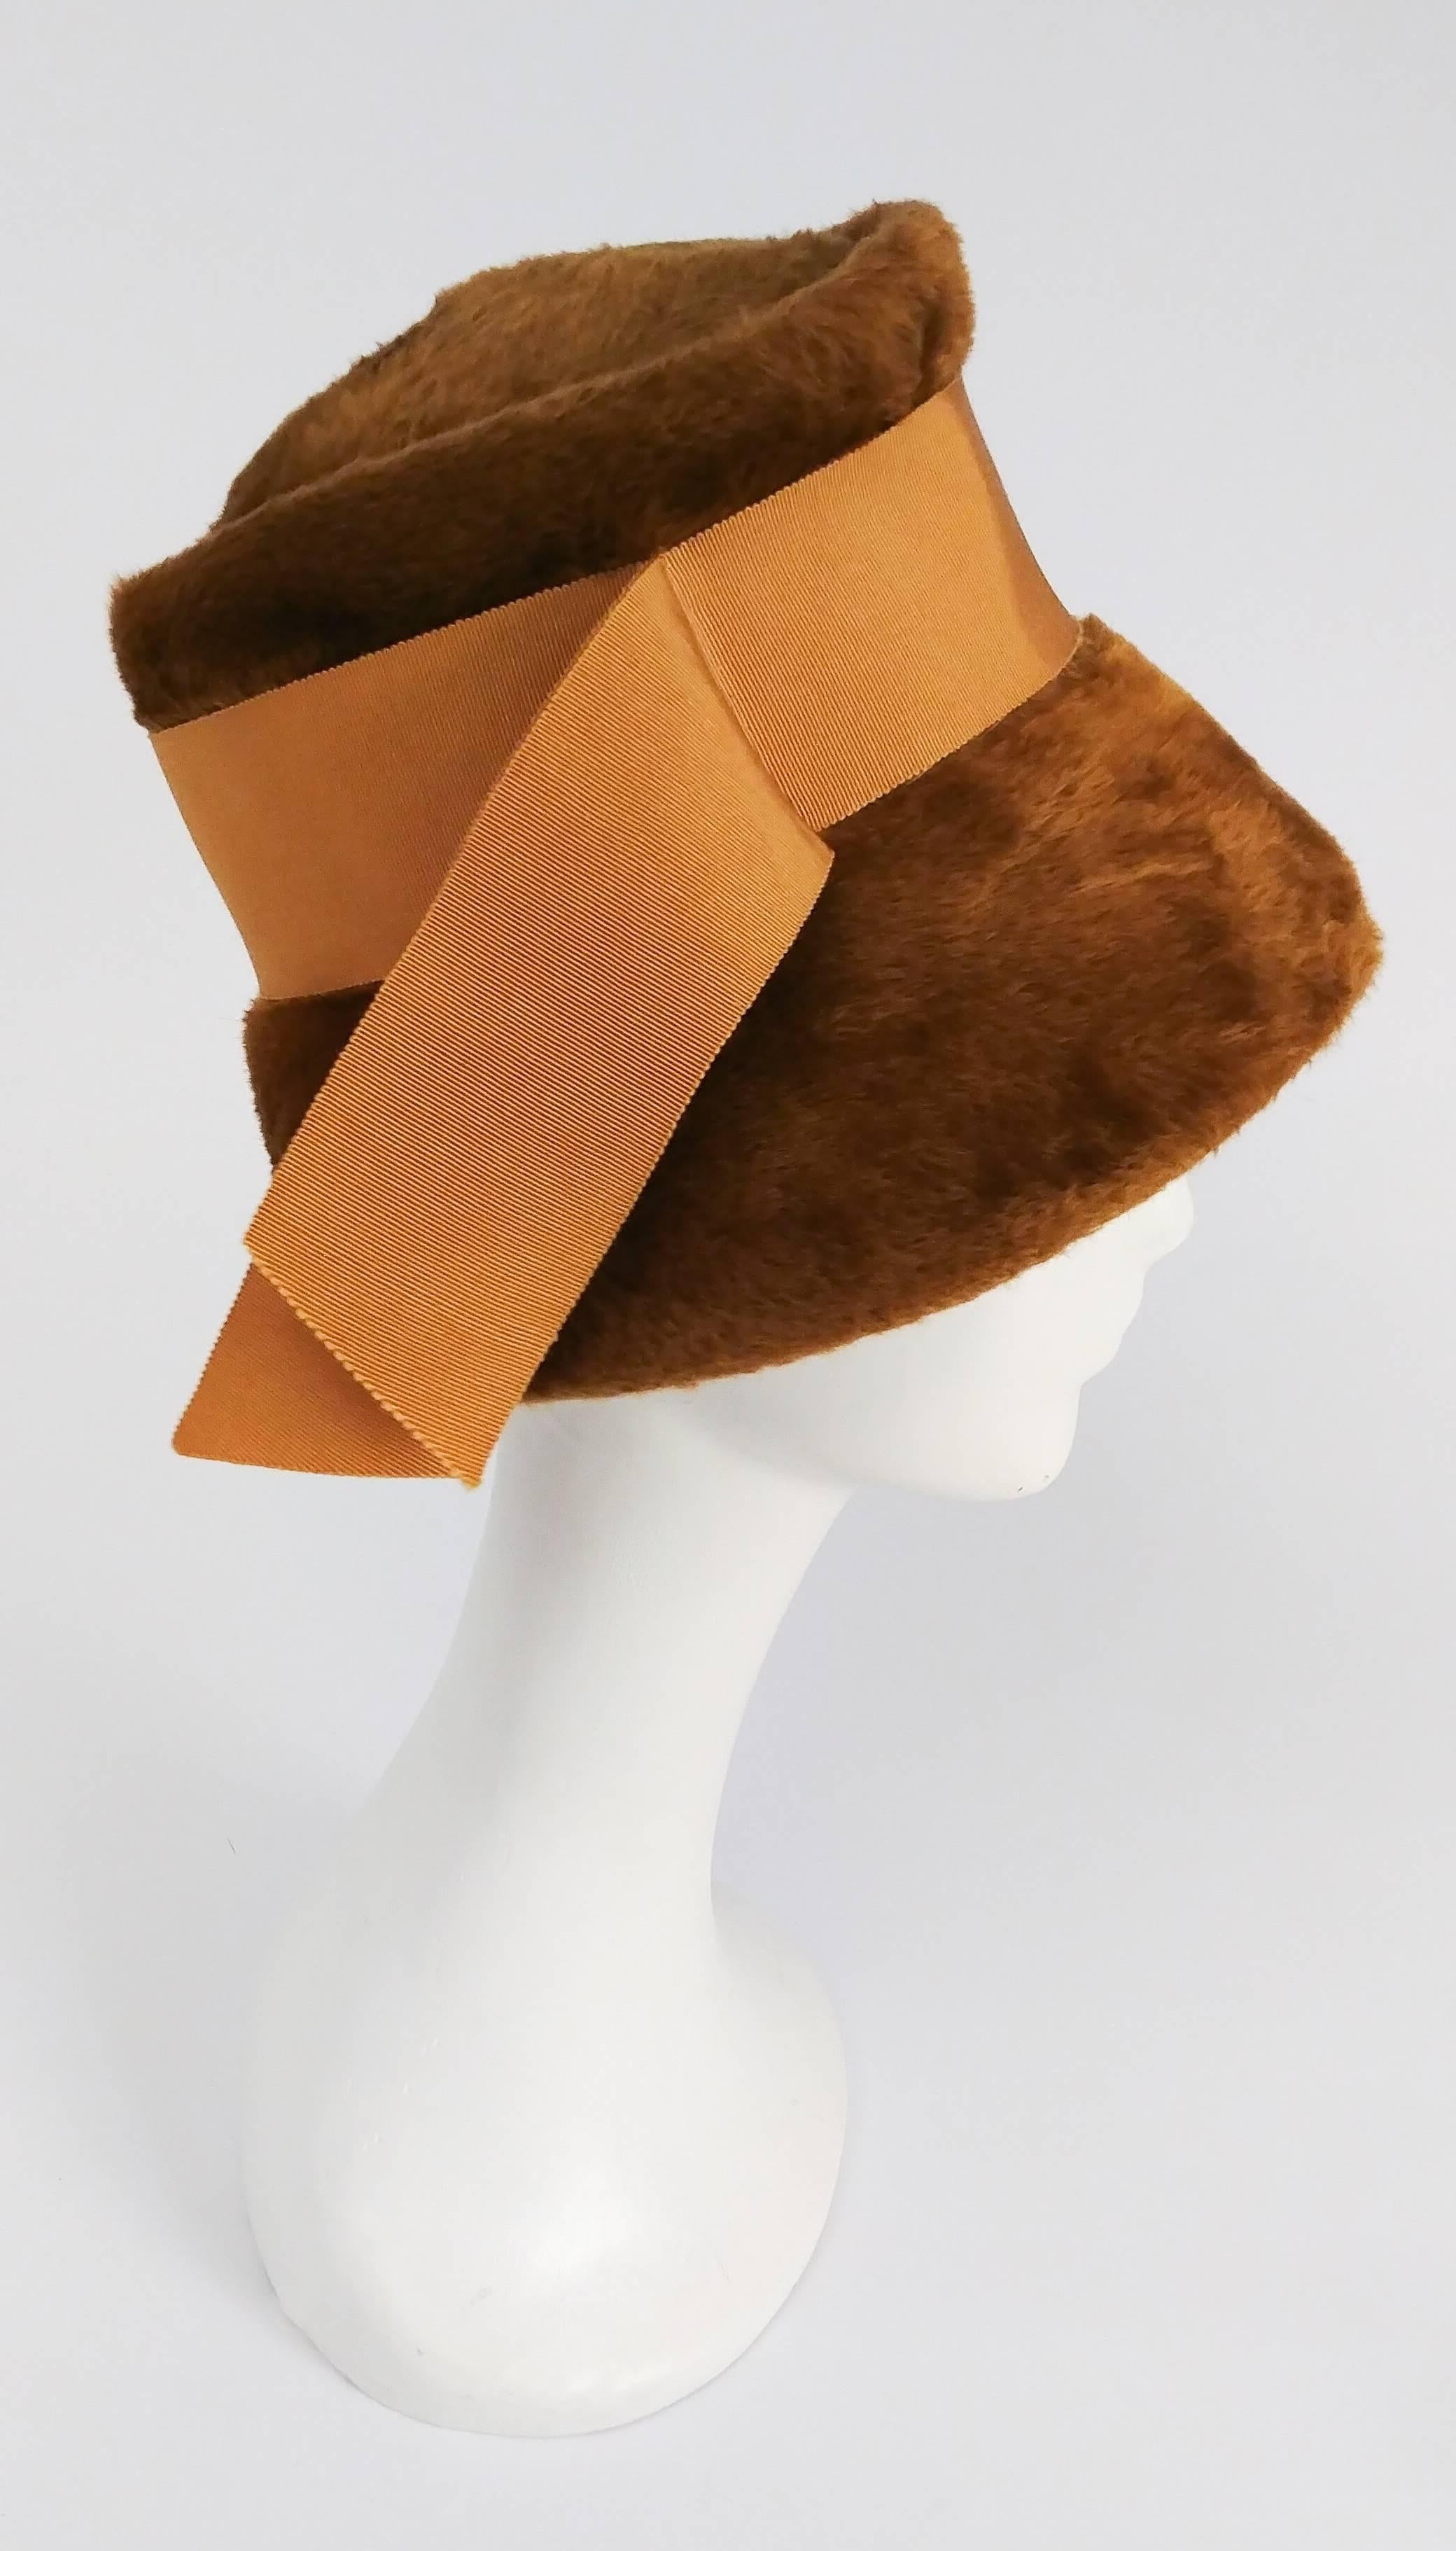 Women's 1960s Ochre Yellow Mod Cloche Hat w/ Grosgrain Ribbon